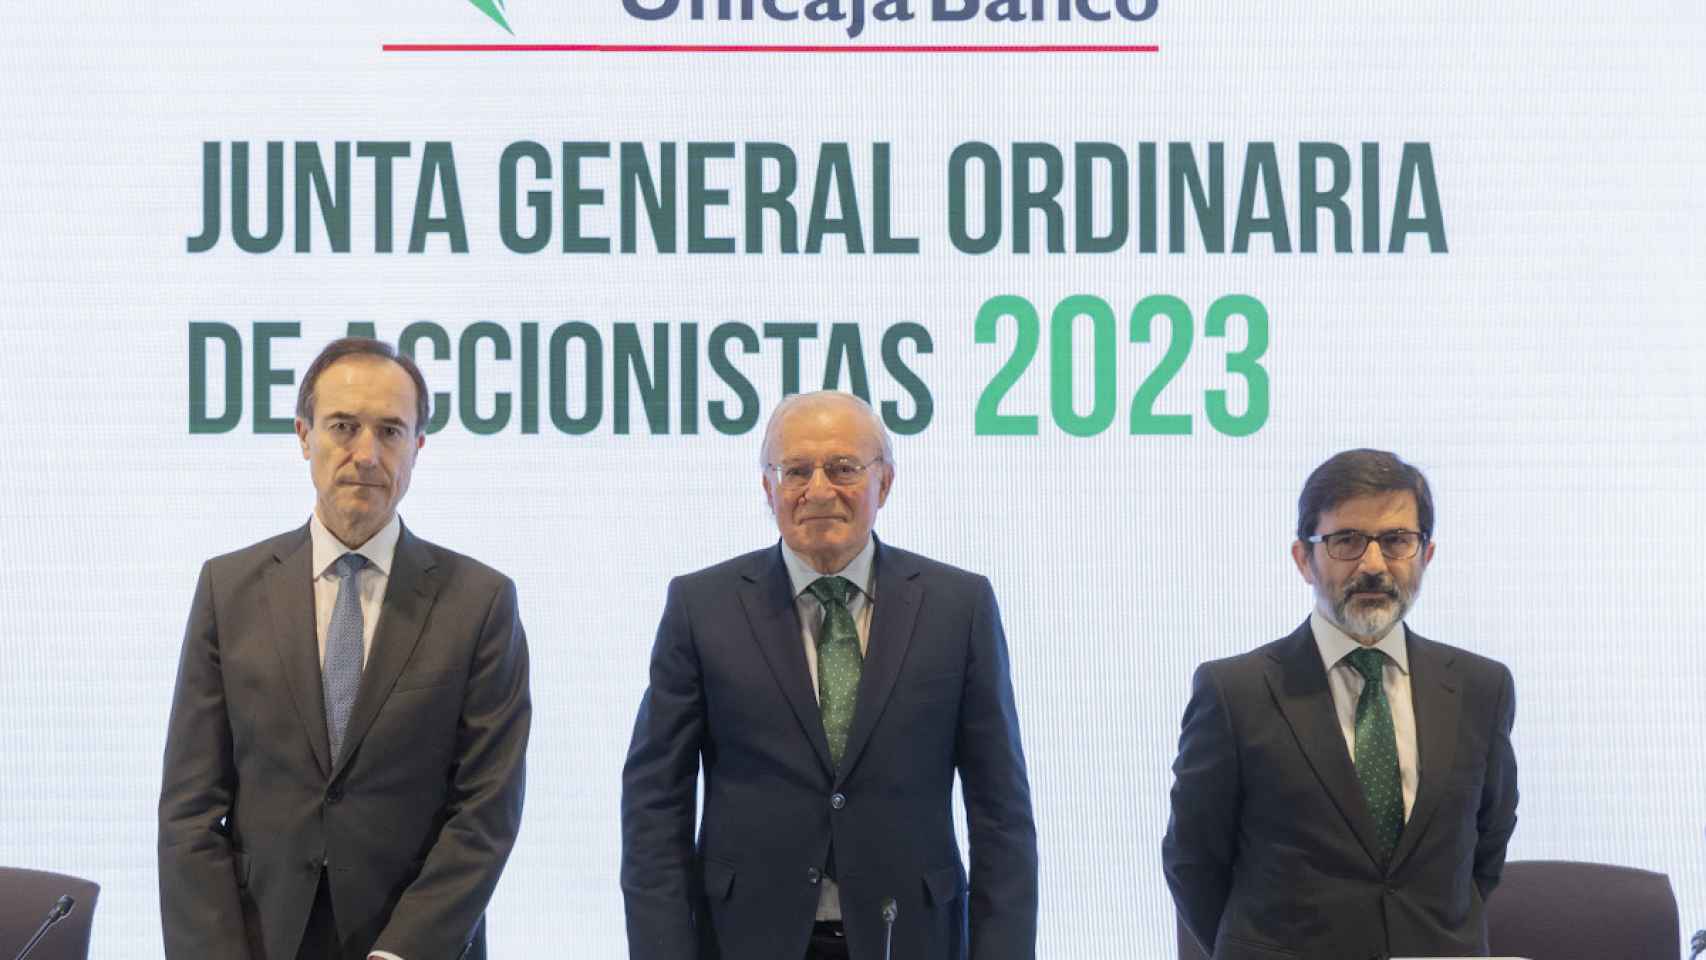 Manuel Menéndez, Consejo Delegado de Unicaja Banco;  Manuel Azuga, Presidente de Unicaja Banco, Y Vicente Orti, Vicesecretario del Consejo del Administración.